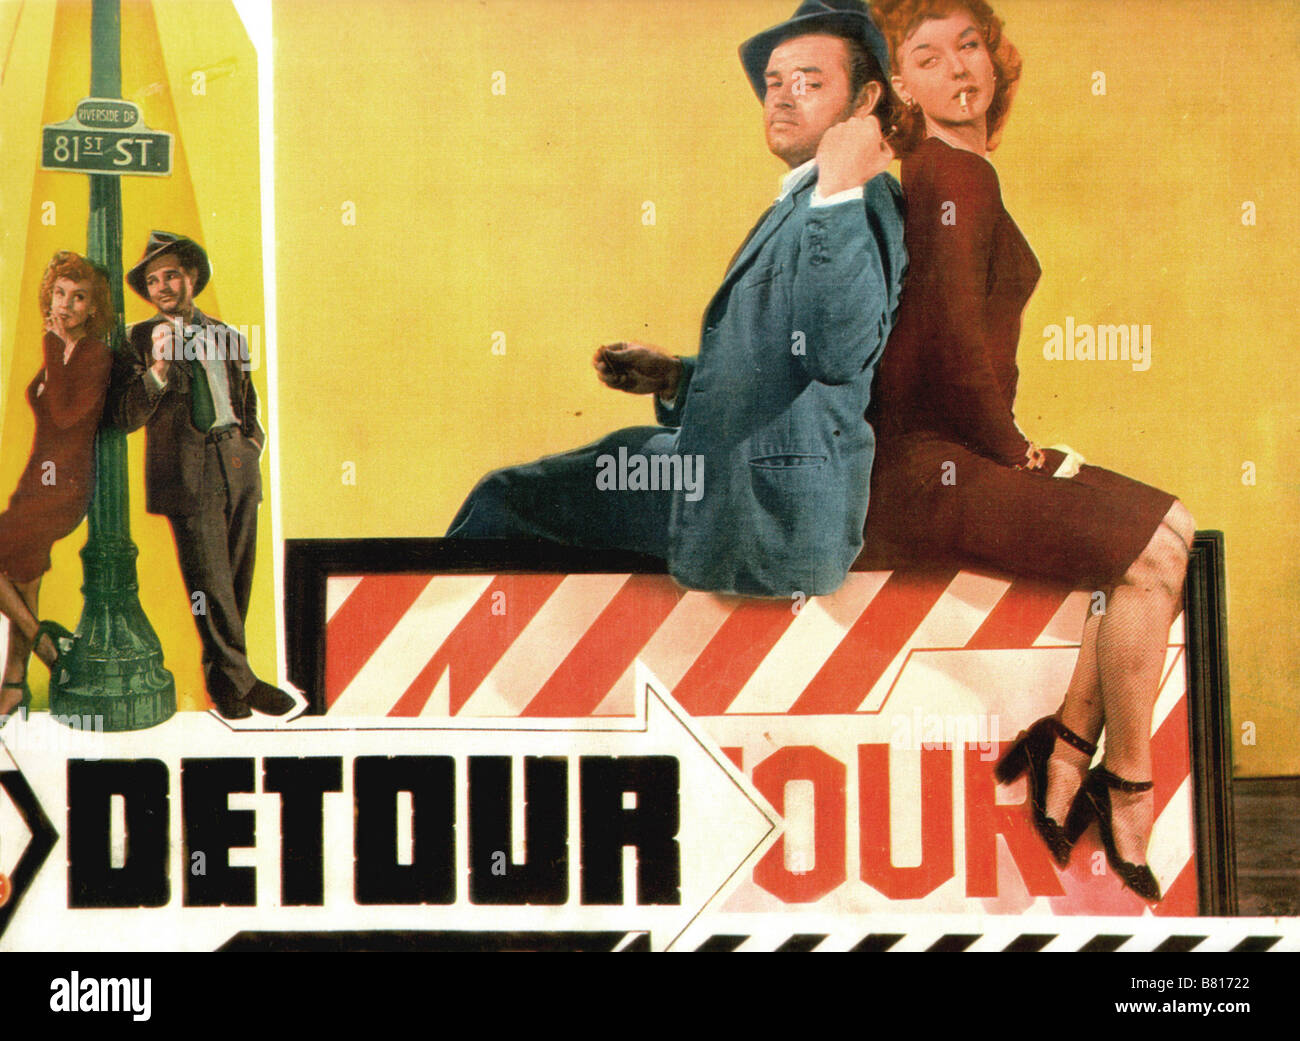 Detour Detour  Year: 1945 USA Ann Savage, Tom Neal  Director: Edgar G. Ulmer Stock Photo